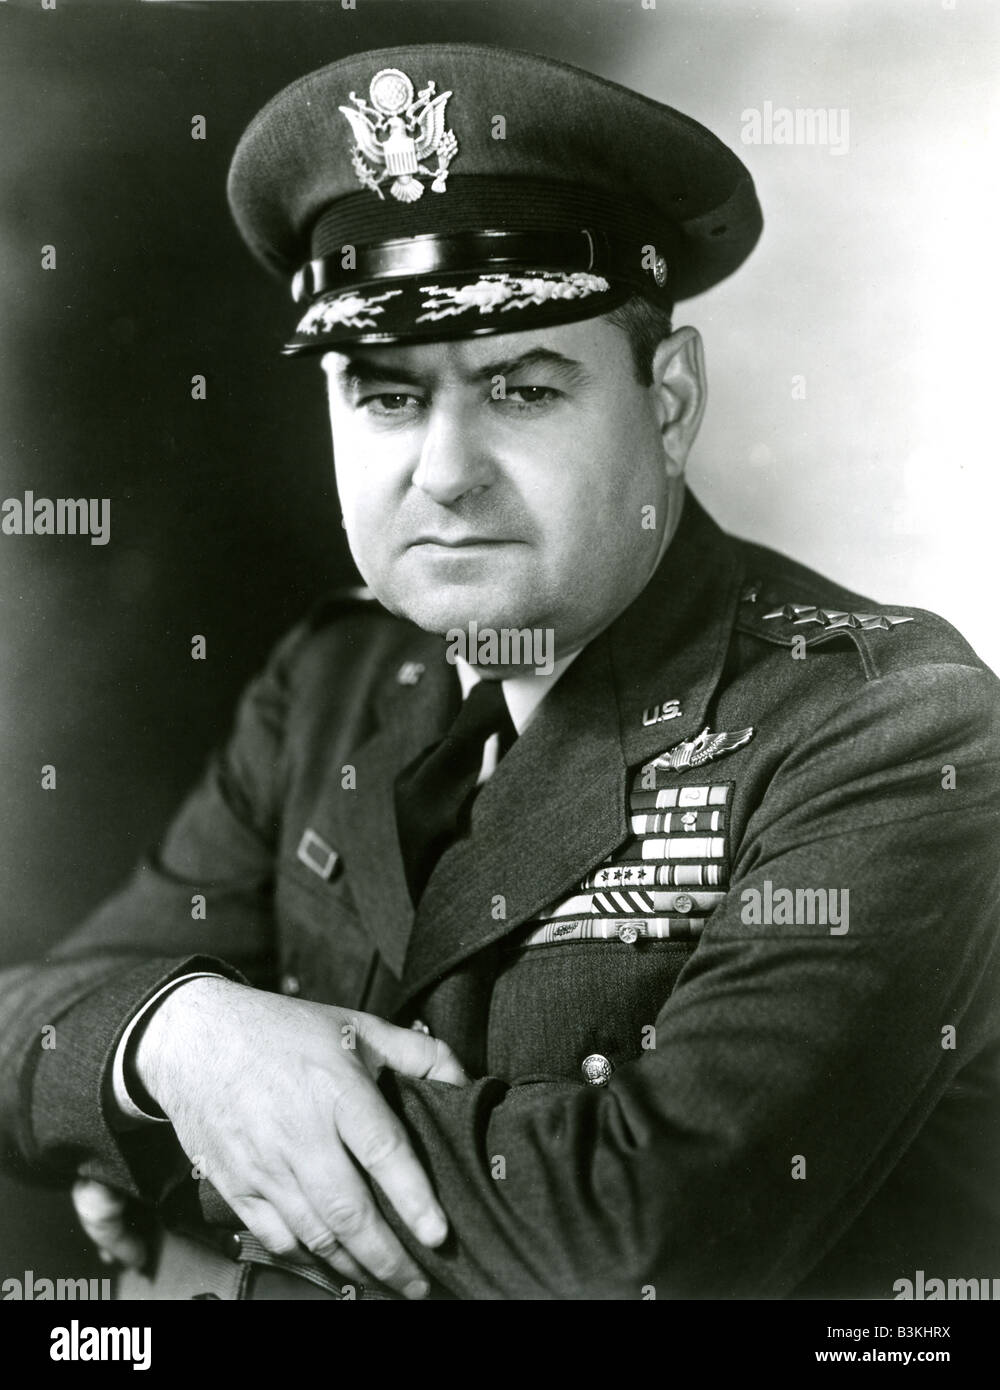 CURTIS LE MAY général à l'aviation américaine qui a conçu la campagne de bombardement stratégique dans la région du Pacifique en WW2 Banque D'Images